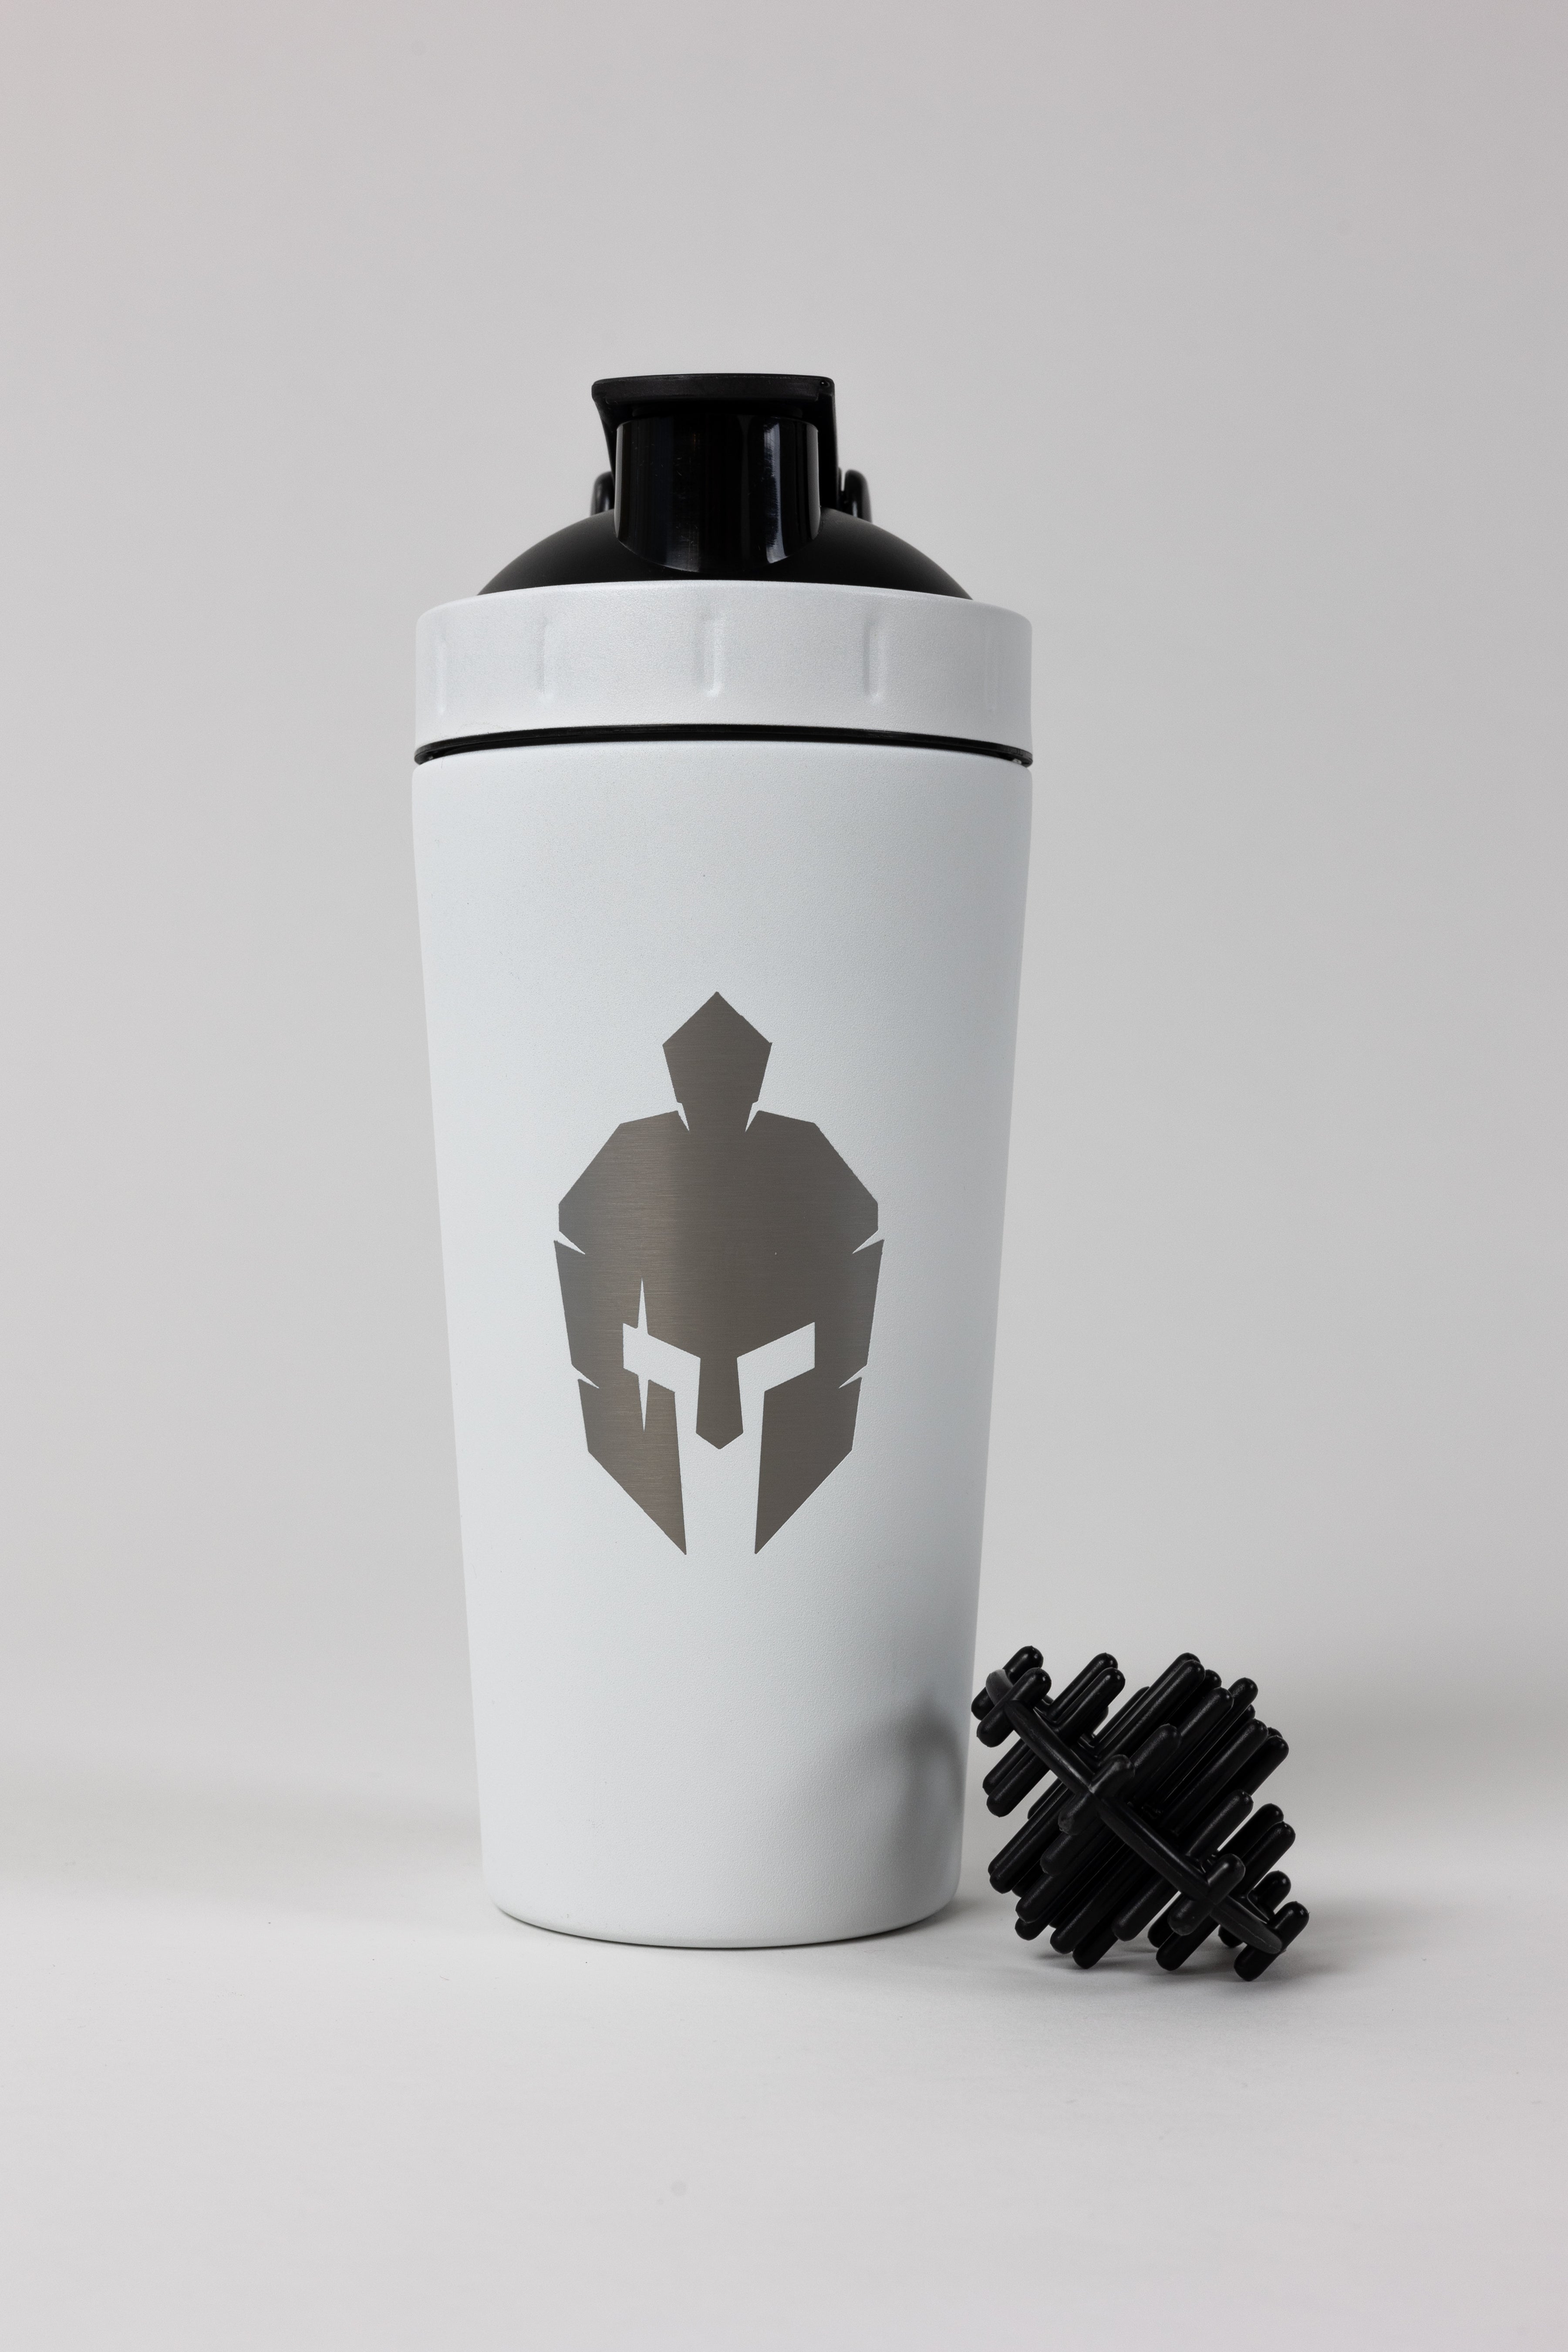 White metal shaker bottle with roman helmet logo on front and black shaker ball sitting next to bottle